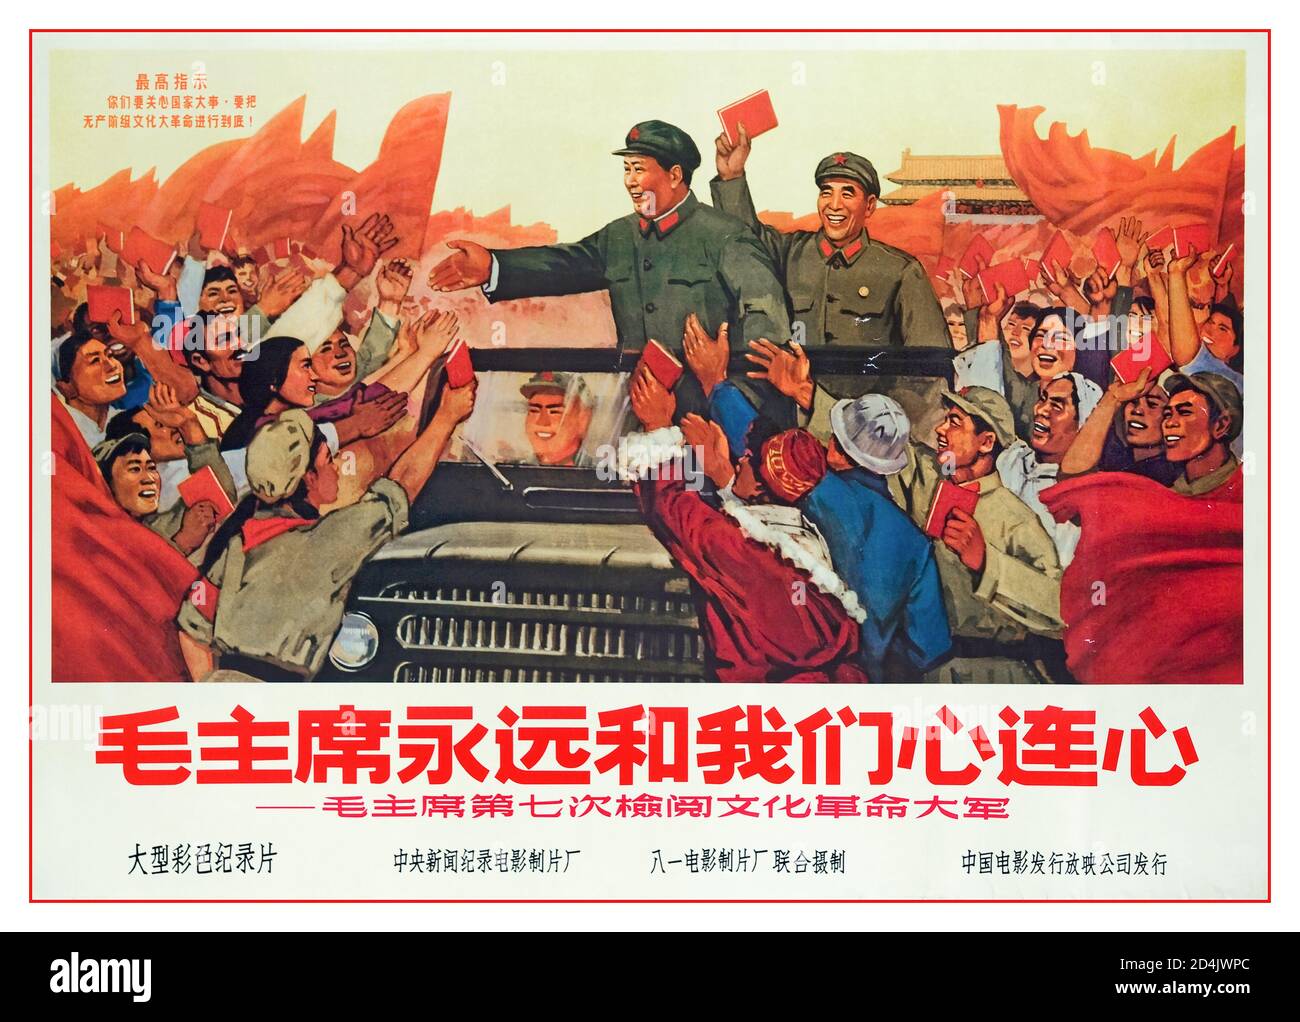 Poster des Jahrgangs 1960 Vorsitzender Mao Zedong Plakat die Kulturrevolution, formal die große proletarische Kulturrevolution, war von 1966 bis 1976 eine gesellschaftspolitische Bewegung in China. Stockfoto